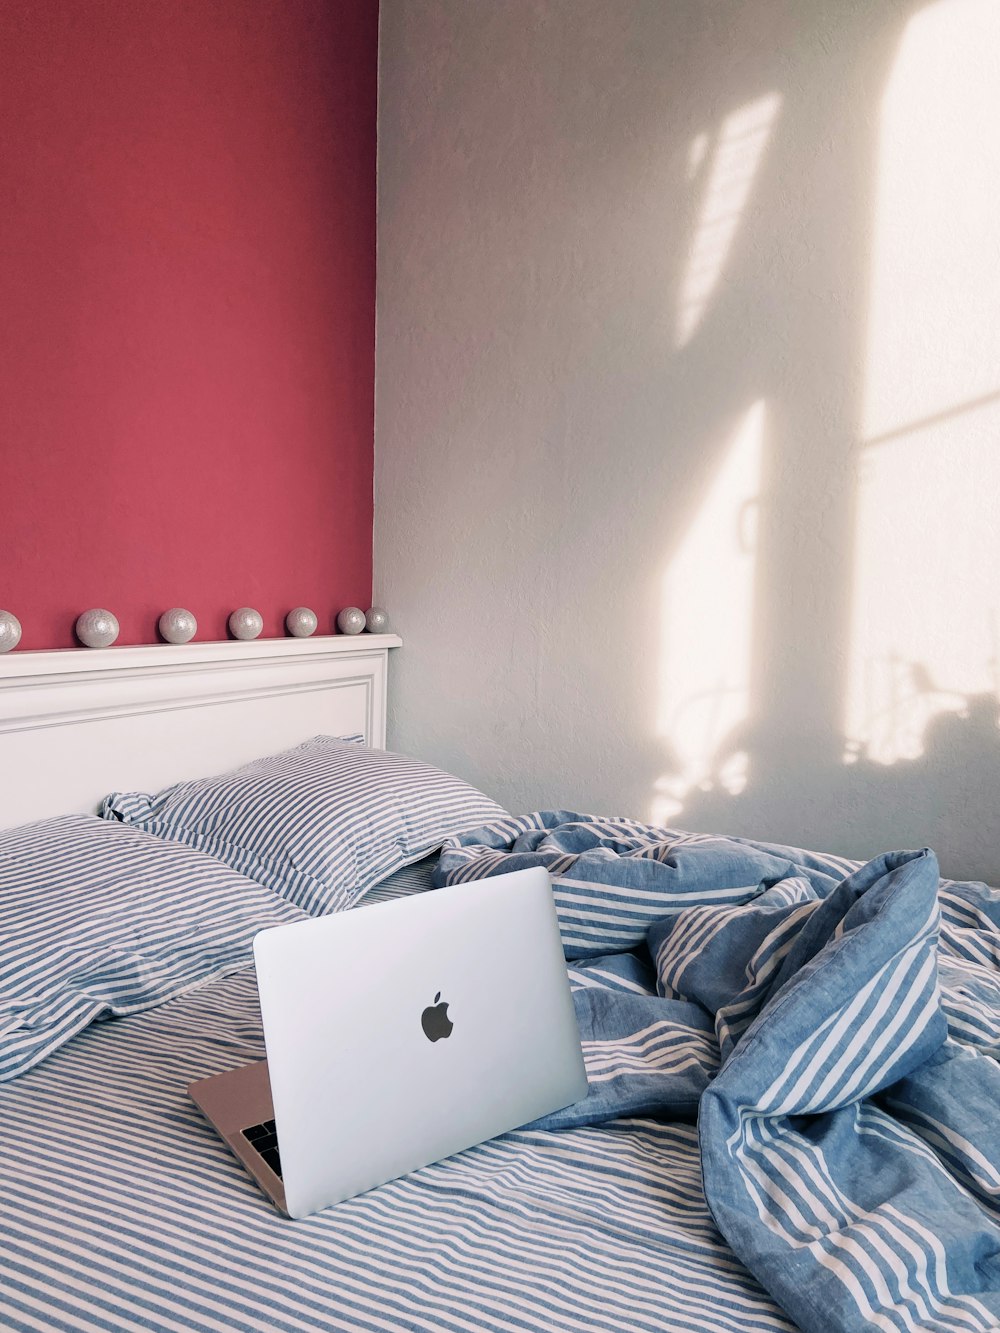 Silbernes MacBook auf blau-weißer Bettwäsche